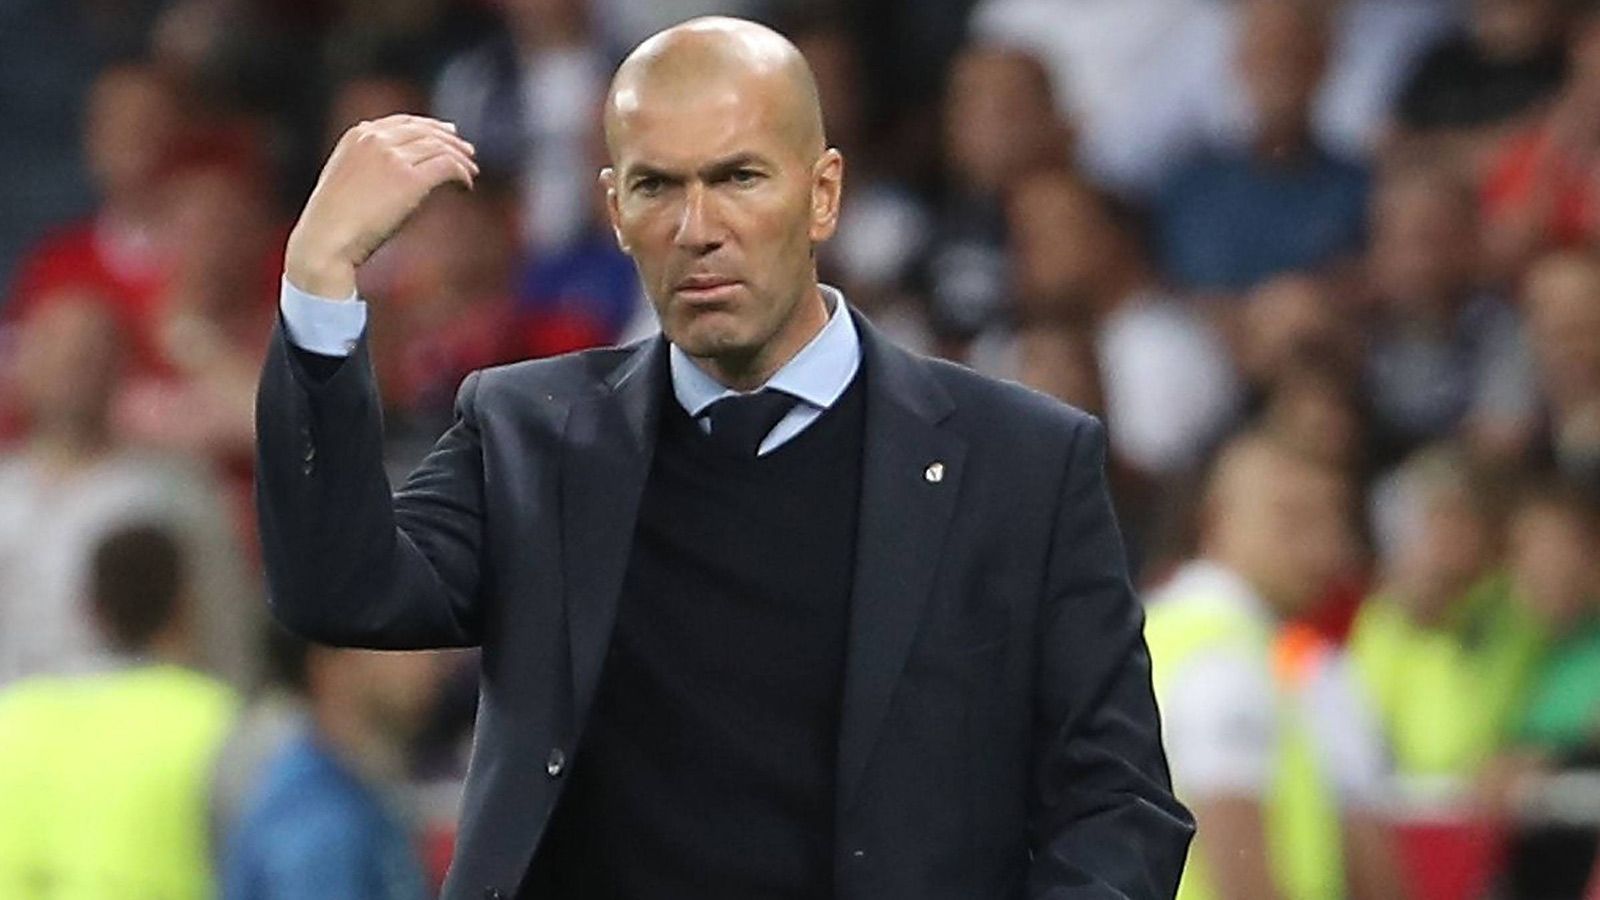 
                <strong>Zinedine Zidane (Real Madrid)</strong><br>
                Der Erfolgstrainer verliert auch während des schwammigen Beginns seines Teams nicht die Ruhe und strahlt diese auch auf die Spieler aus. Wie gewohnt setzt der einstige Ballvirtuose auf die Routine seiner Stars und lässt diesen viele Freiheiten. Mit der Einwechslung von Bale gelingt ihm ein Geniestreich. Es ist kein Zufall, dass Real unter ihm den Henkelpott zum dritten Mal nacheinander abräumt. ran-Note: 1
              